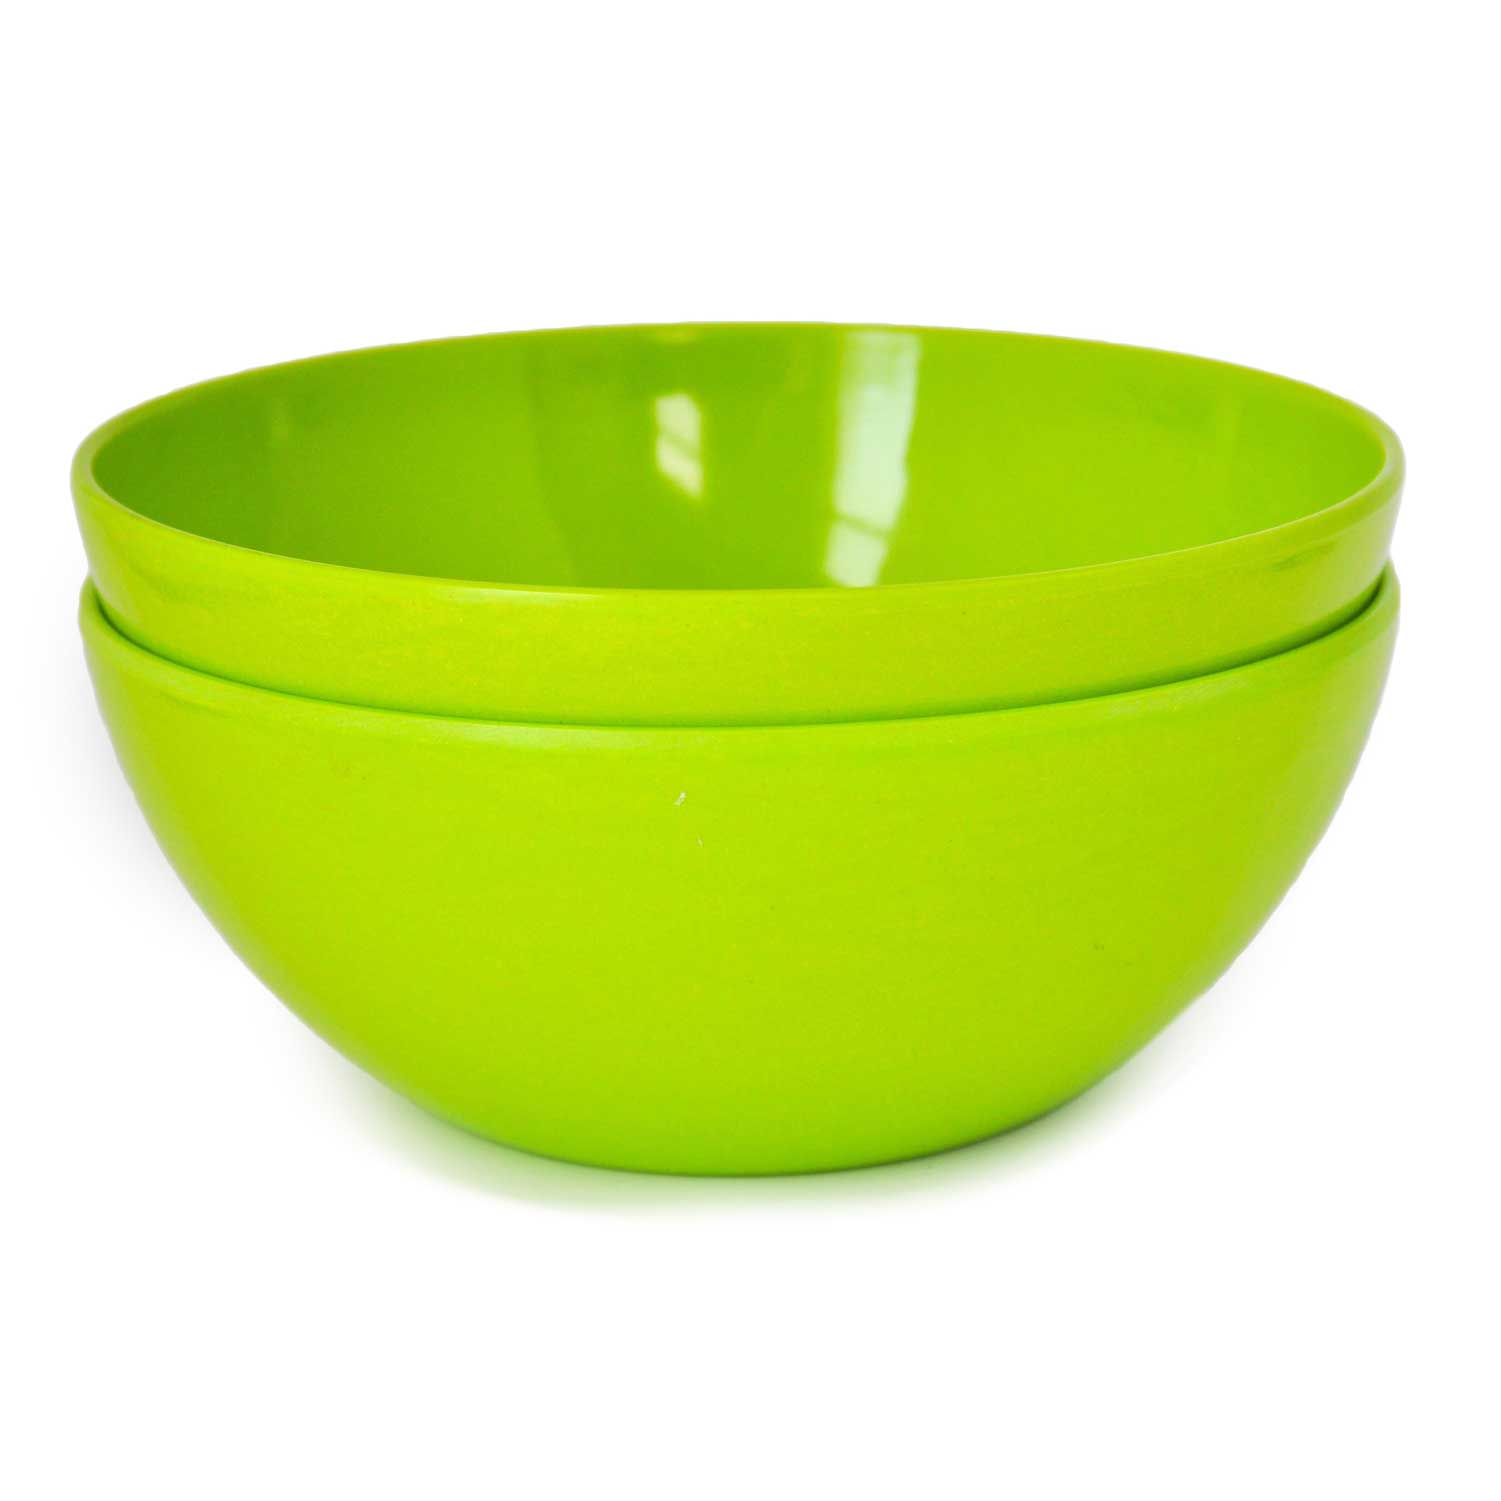 yumi-502-nature-green-natural-bamboo-salad-pasta-and-soup-bowls-set-of-2.jpg